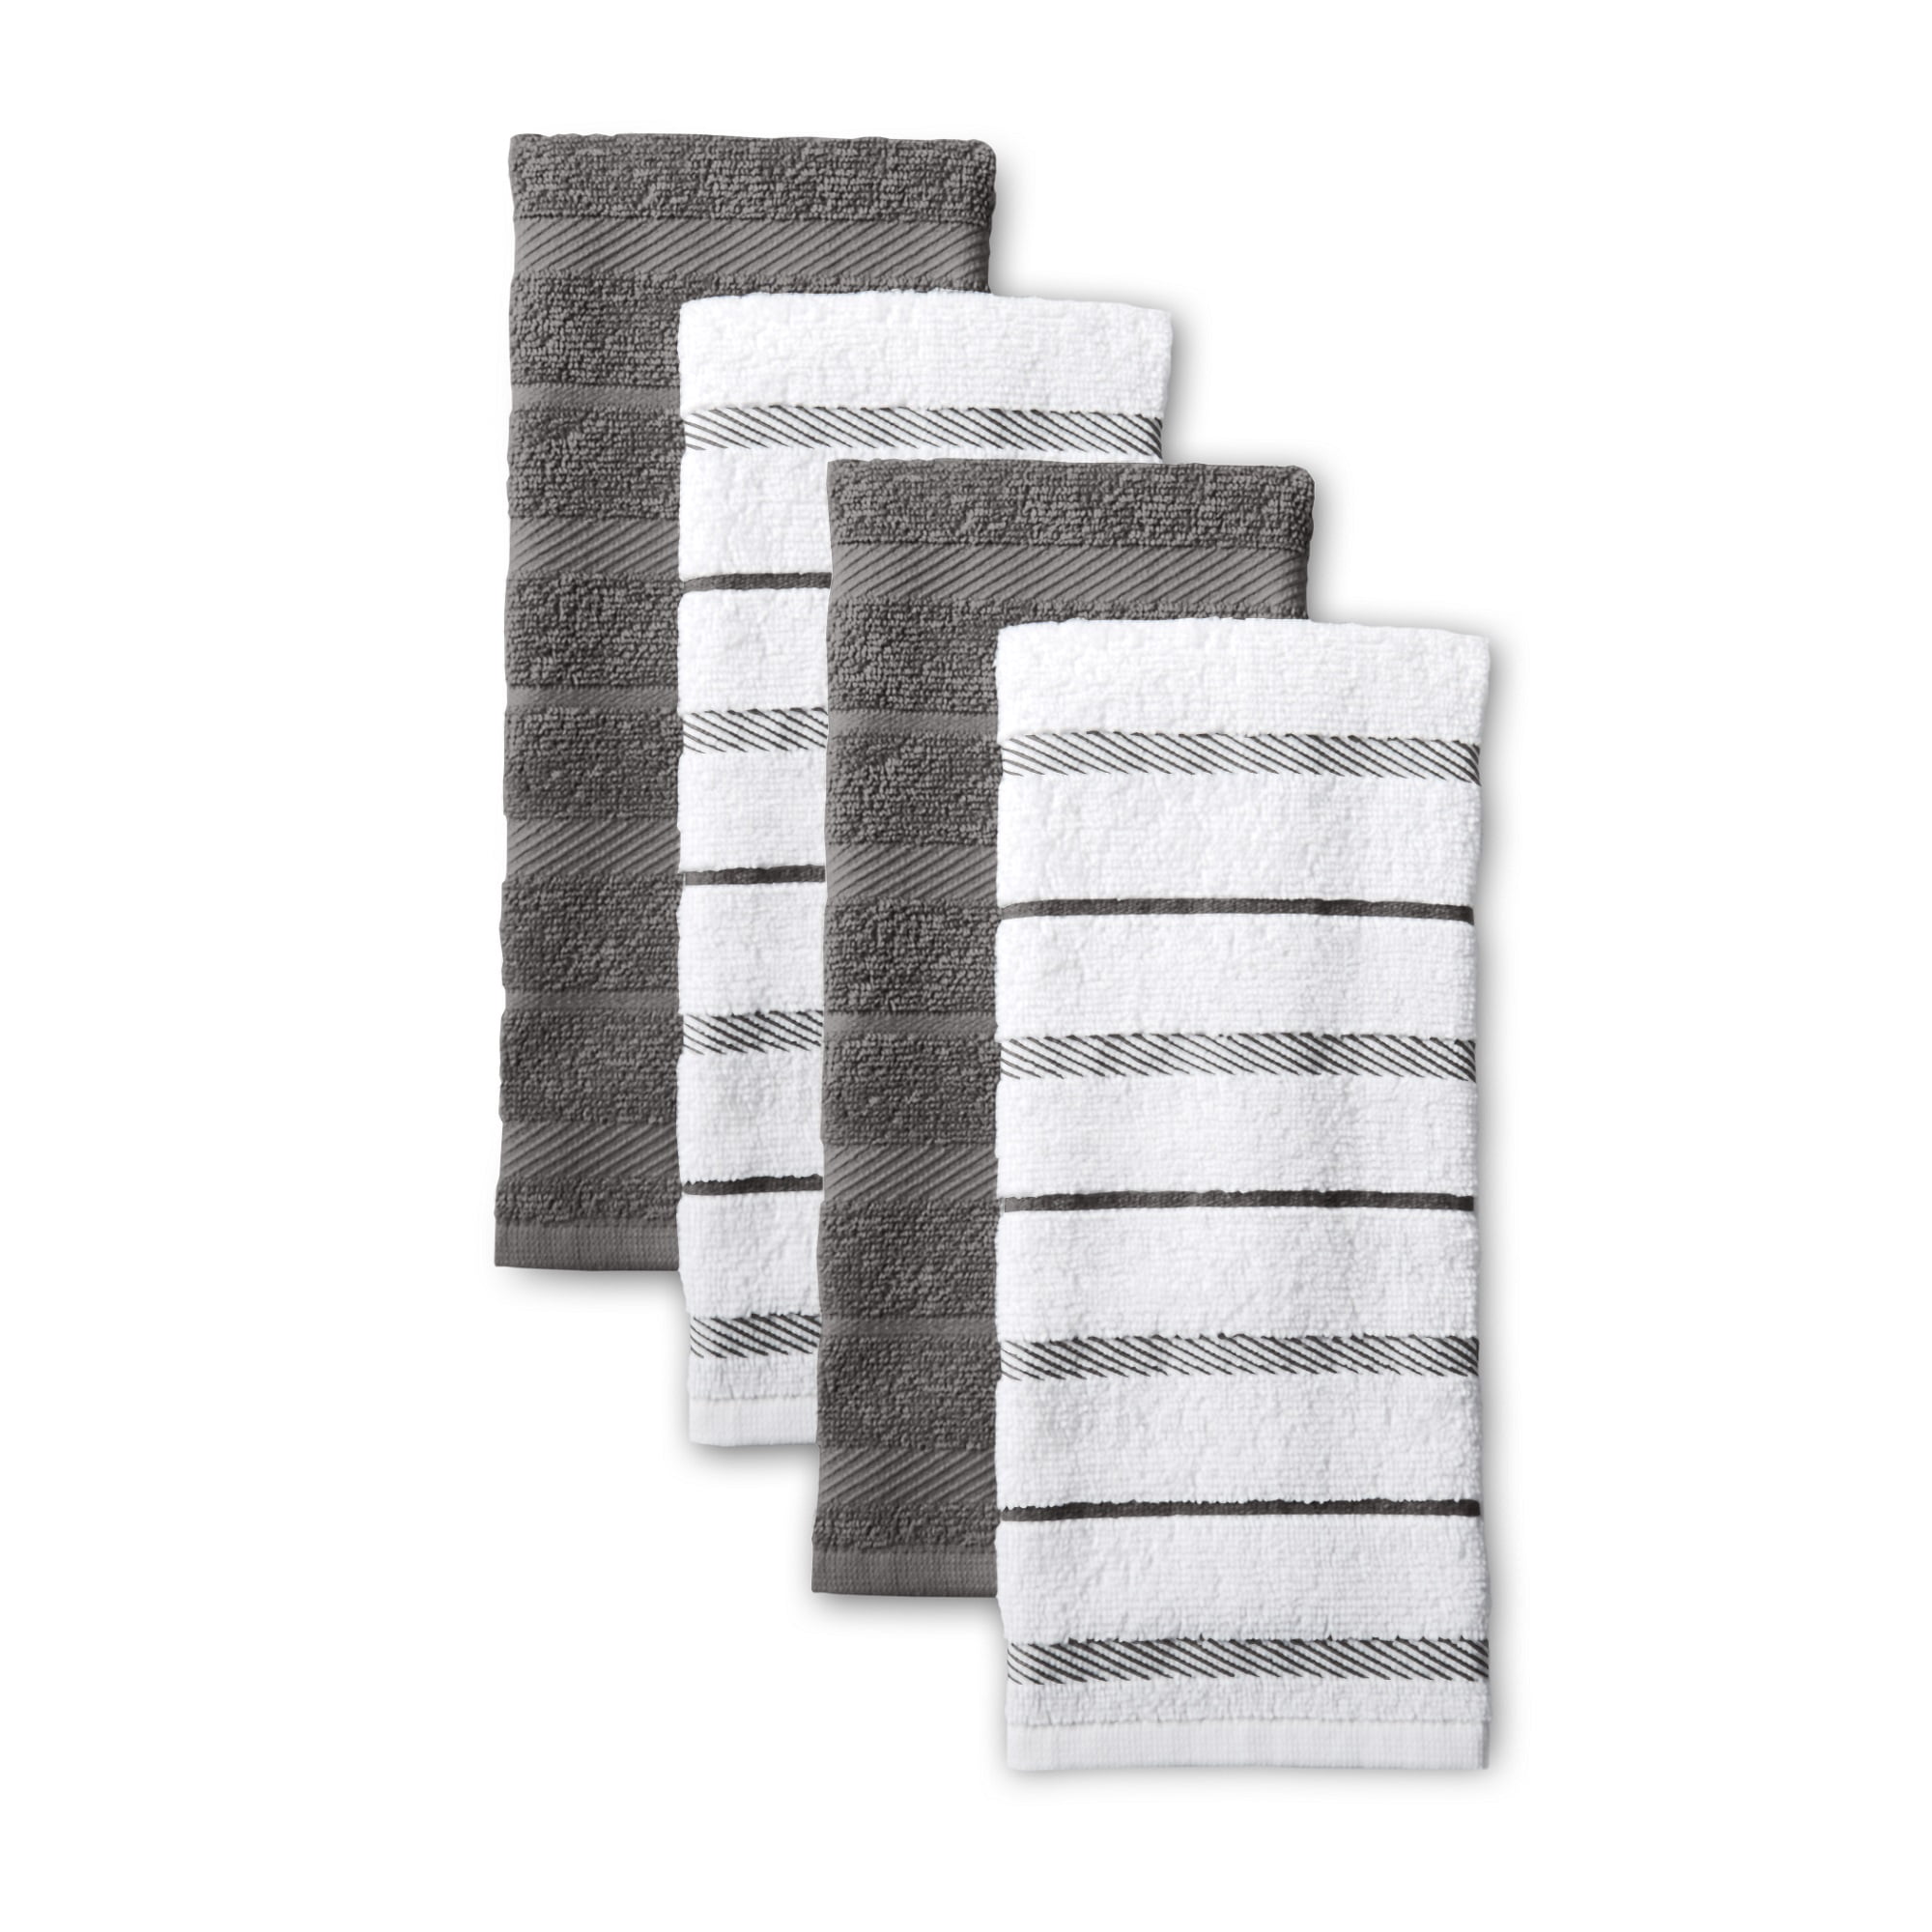 BBQ Hanging Kitchen Towel // Hot Sauce Kitchen Towel // Dish Towel // Man Kitchen Towel